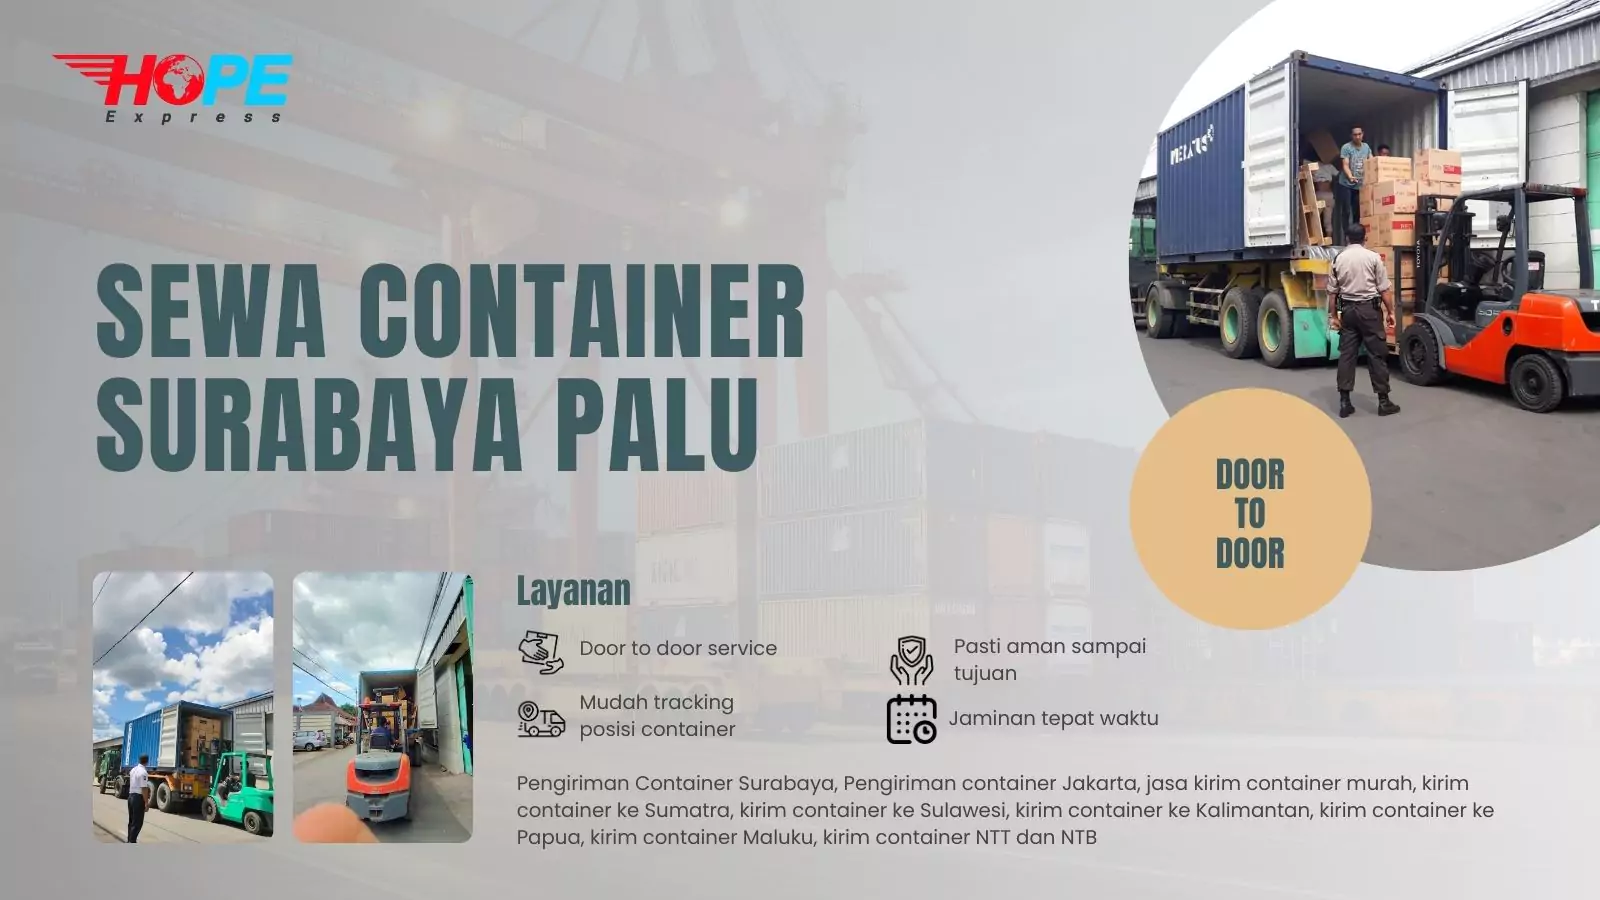 Sewa Container Surabaya Palu